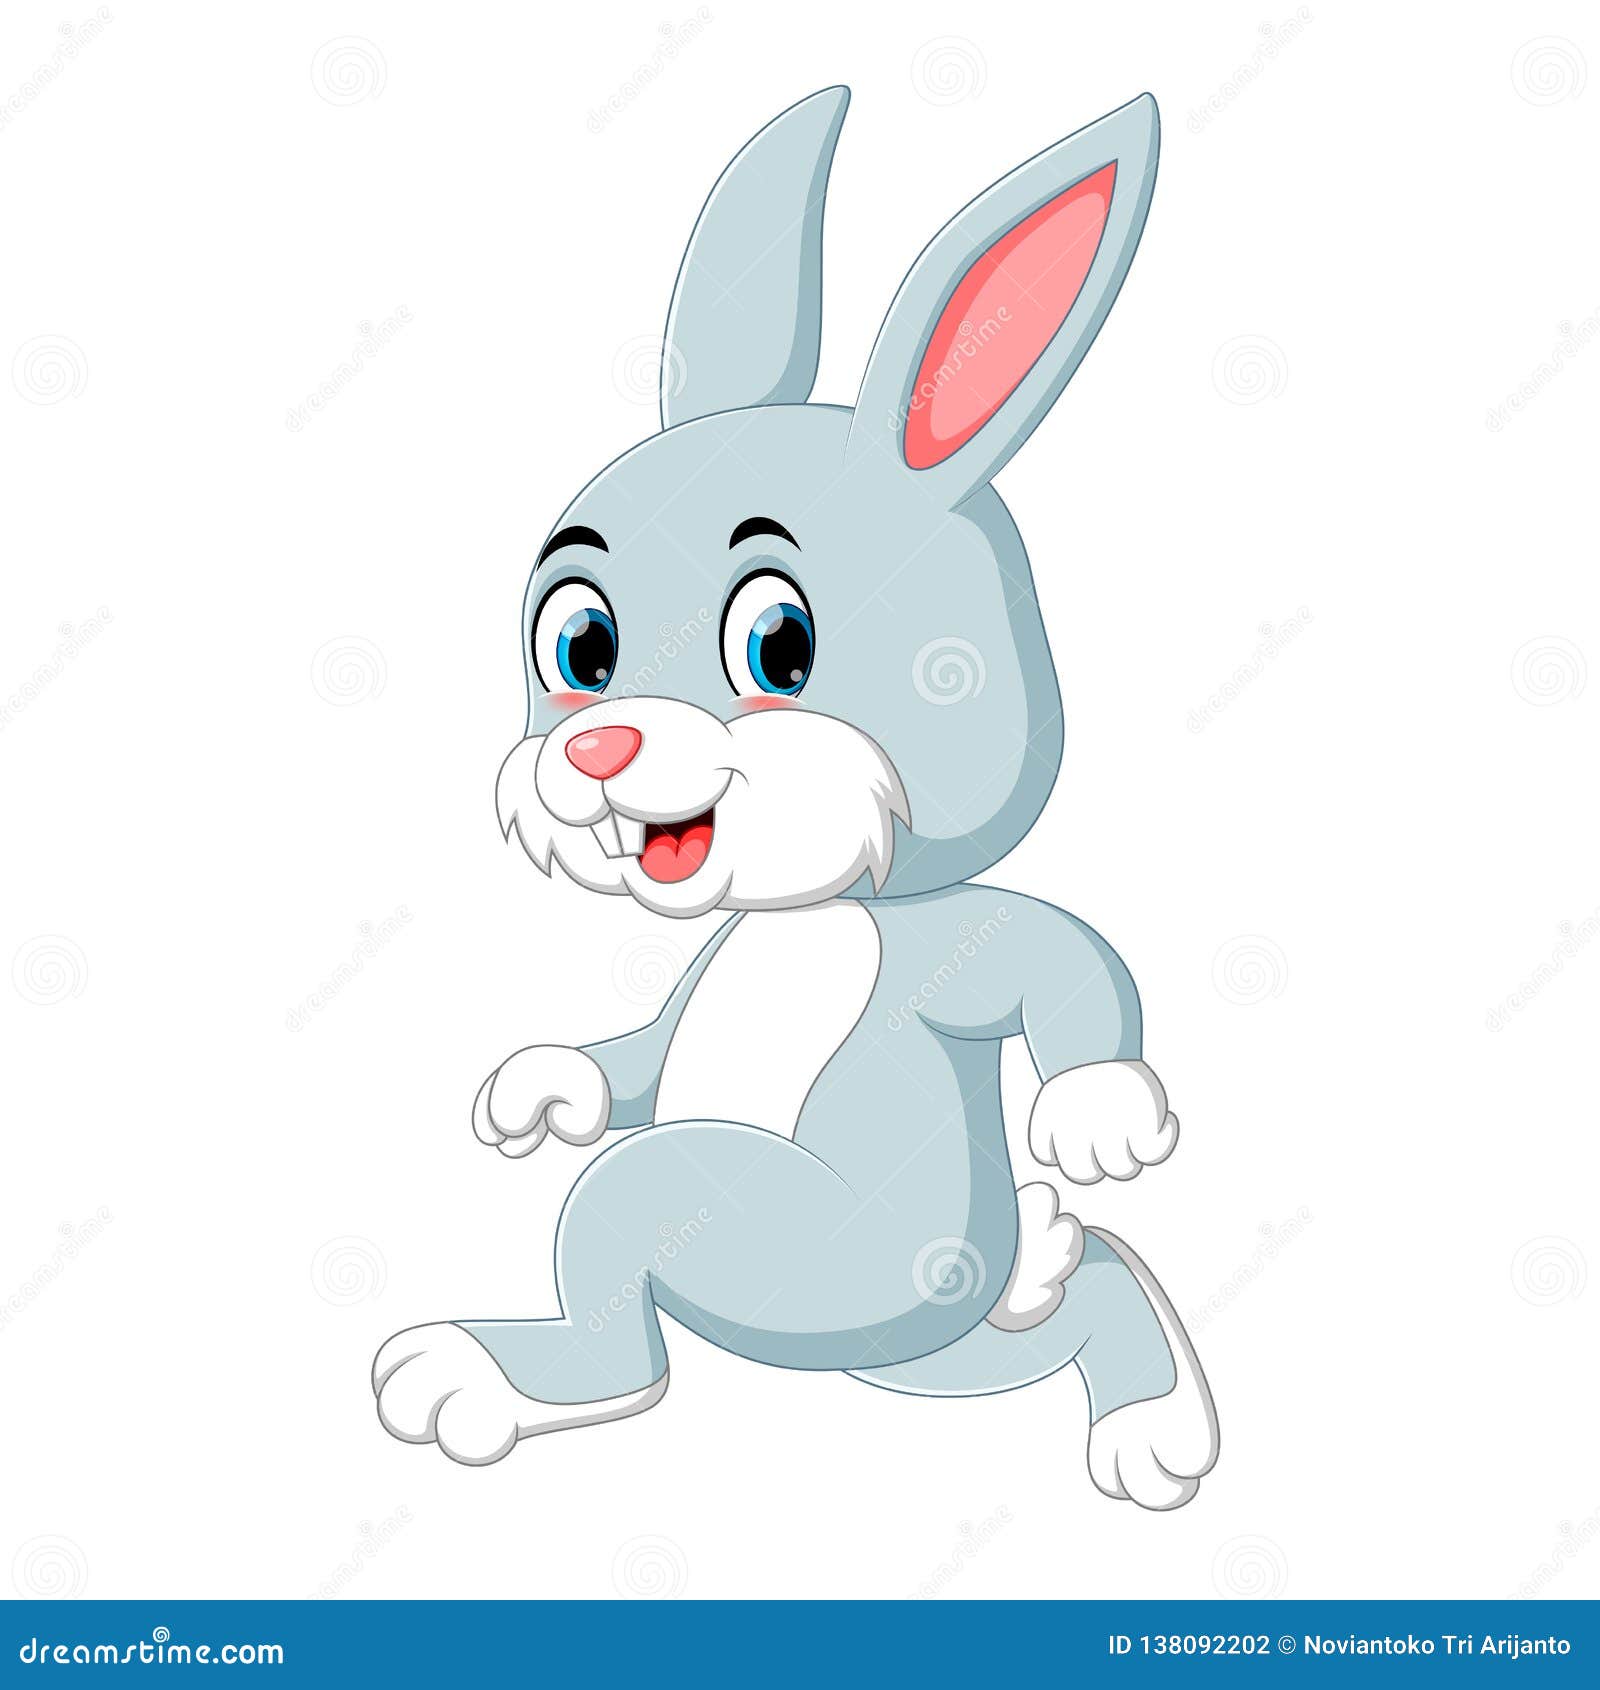 A cute rabbit running stock vector. Illustration of food - 138092202